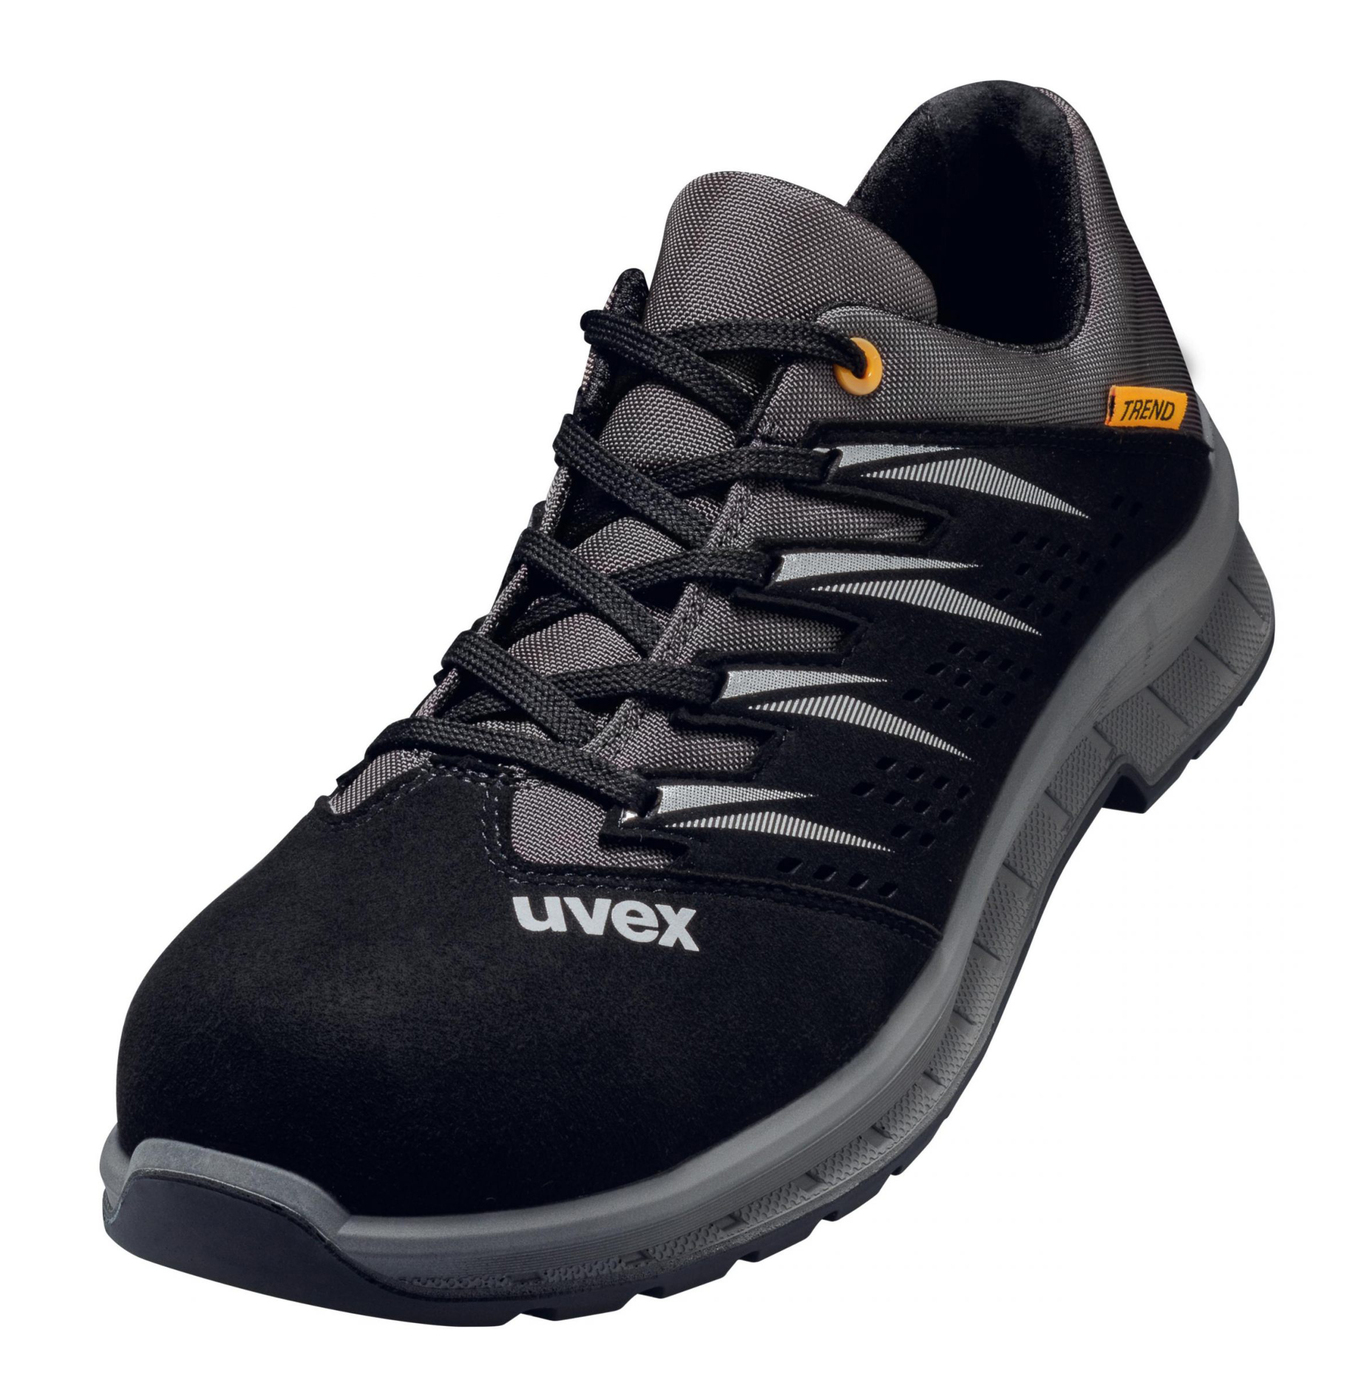 Obuv UVEX preforovaná,čierno šedá č.36 6947836 - Pracovná obuv | MasMasaryk